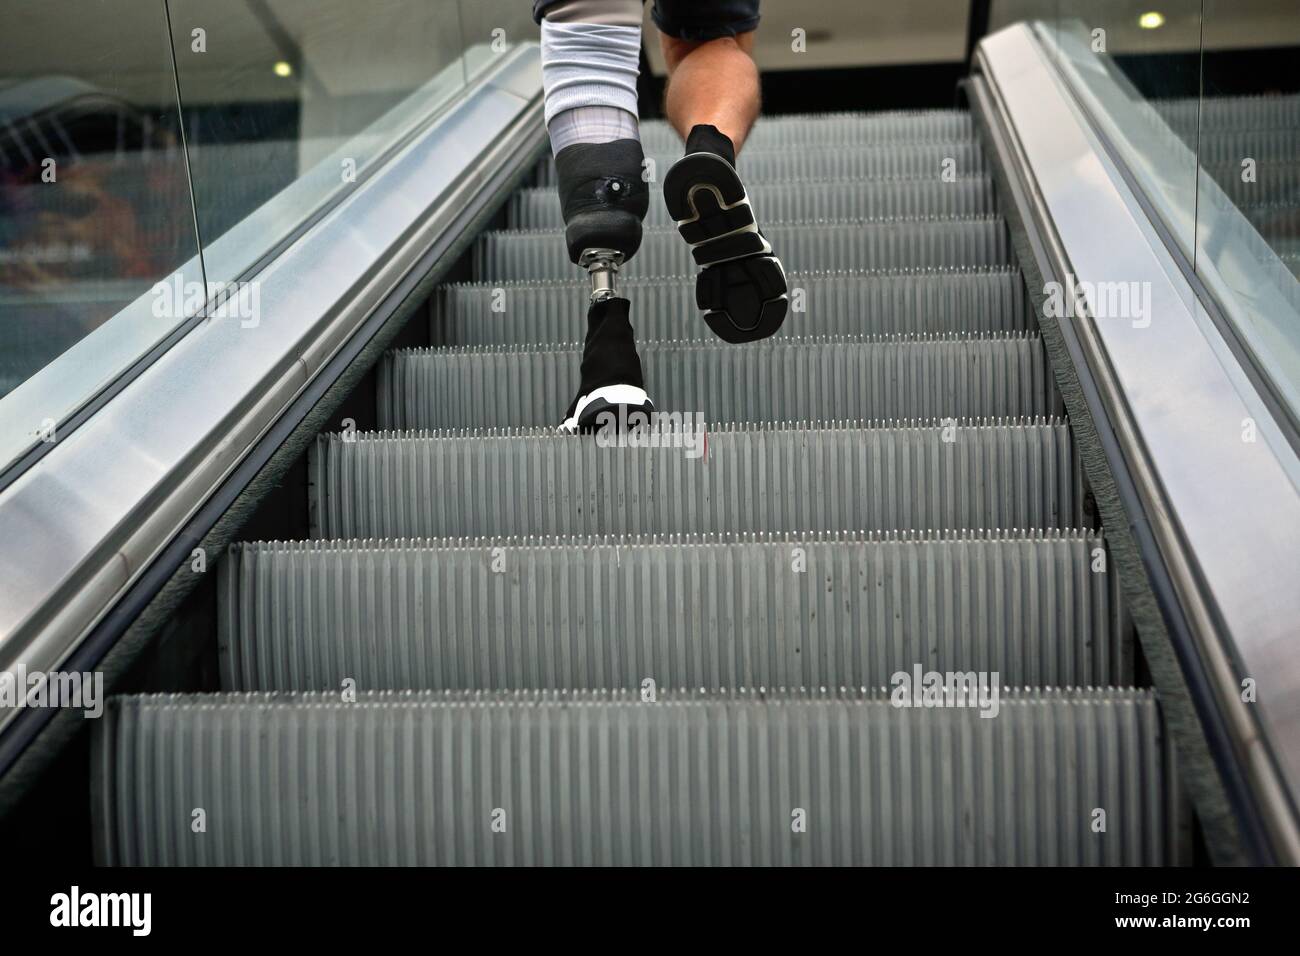 Londres (Royaume-Uni), 6 juillet 2021 : un homme avec une jambe prothétique nie un escalator dans le centre commercial de Londres. Banque D'Images